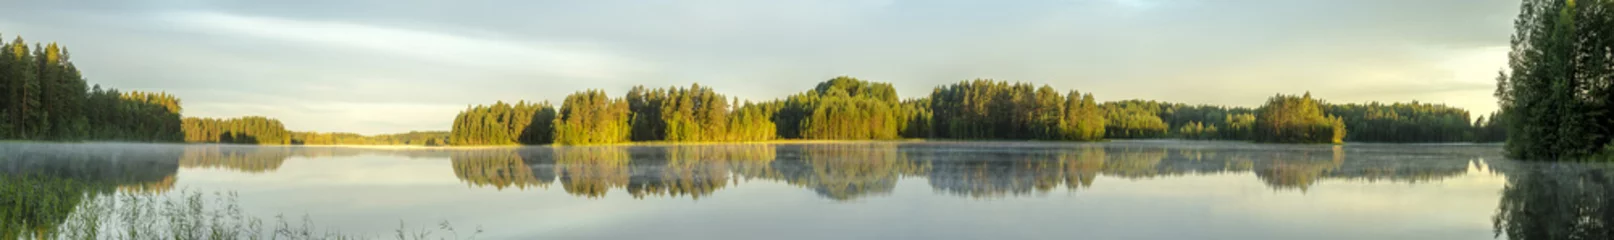 Papier Peint photo Panoramique vue panoramique sur la rive calme du lac en Europe avec brouillard, reflet des arbres et verdure à l& 39 aube